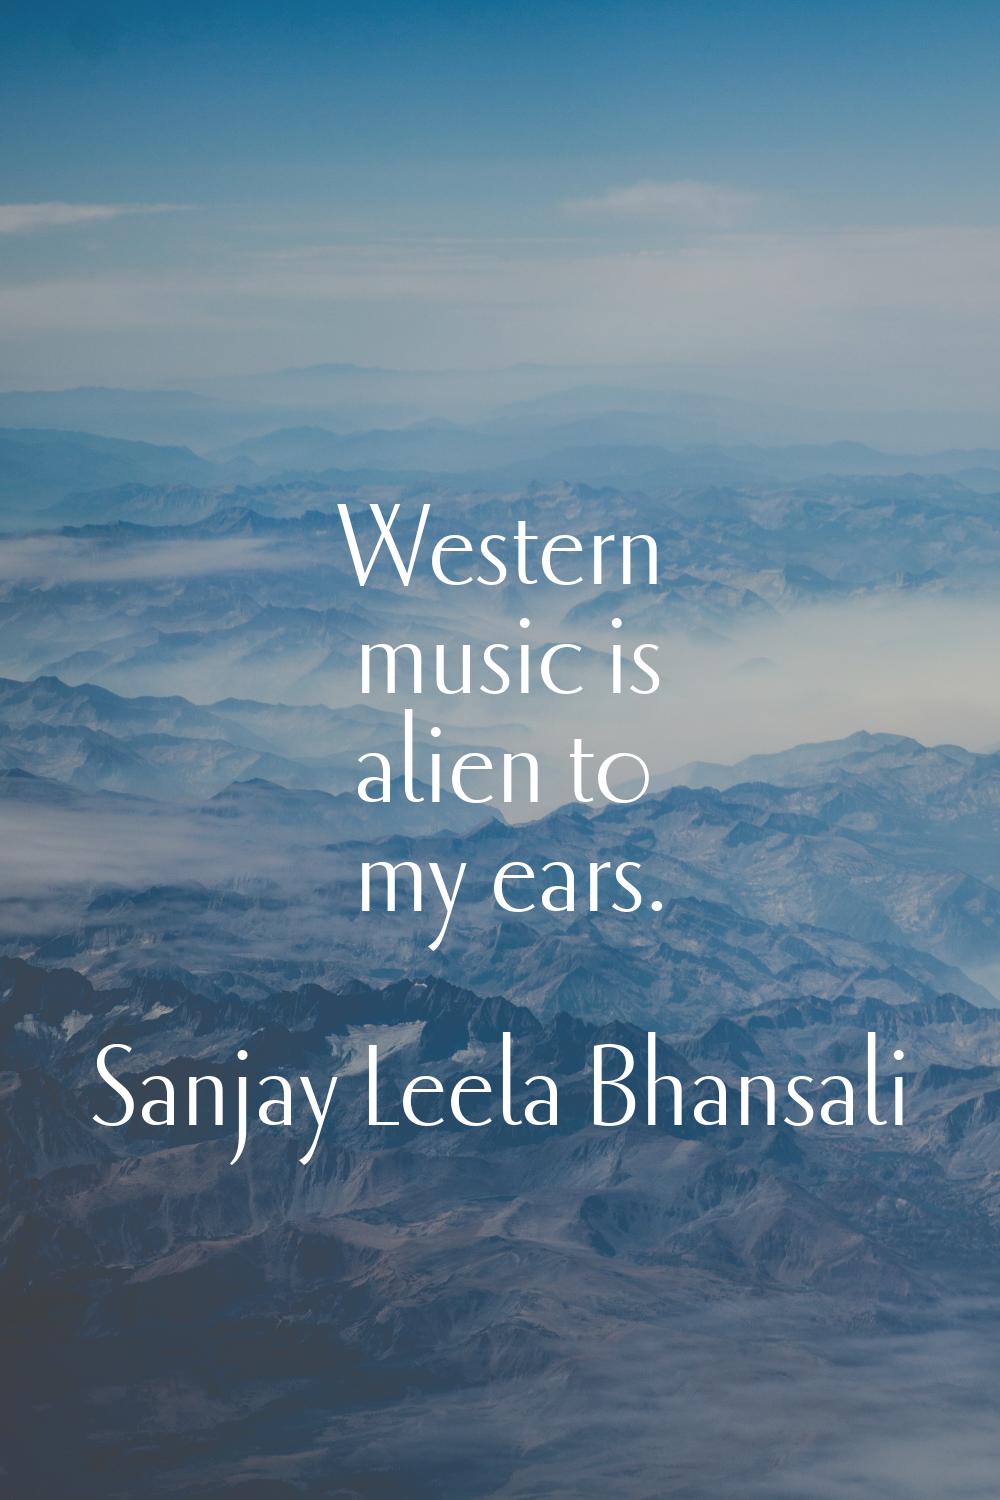 Western music is alien to my ears.